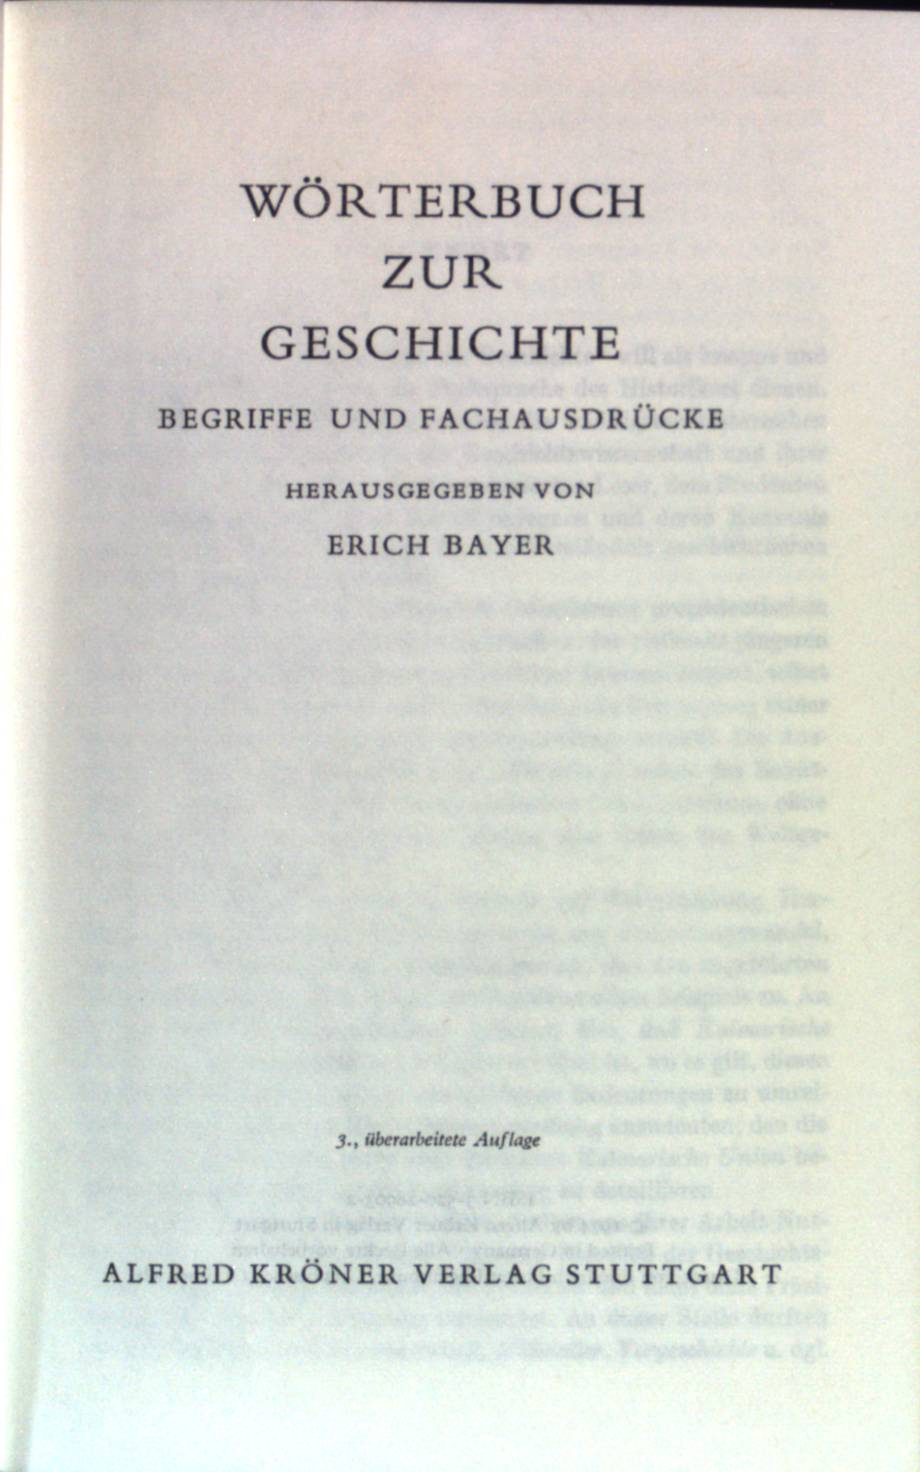 Wörterbuch zur Geschichte : Begriffe u. Fachausdrücke. Kröners Taschenausgabe Bd. 289. - Bayer, Erich